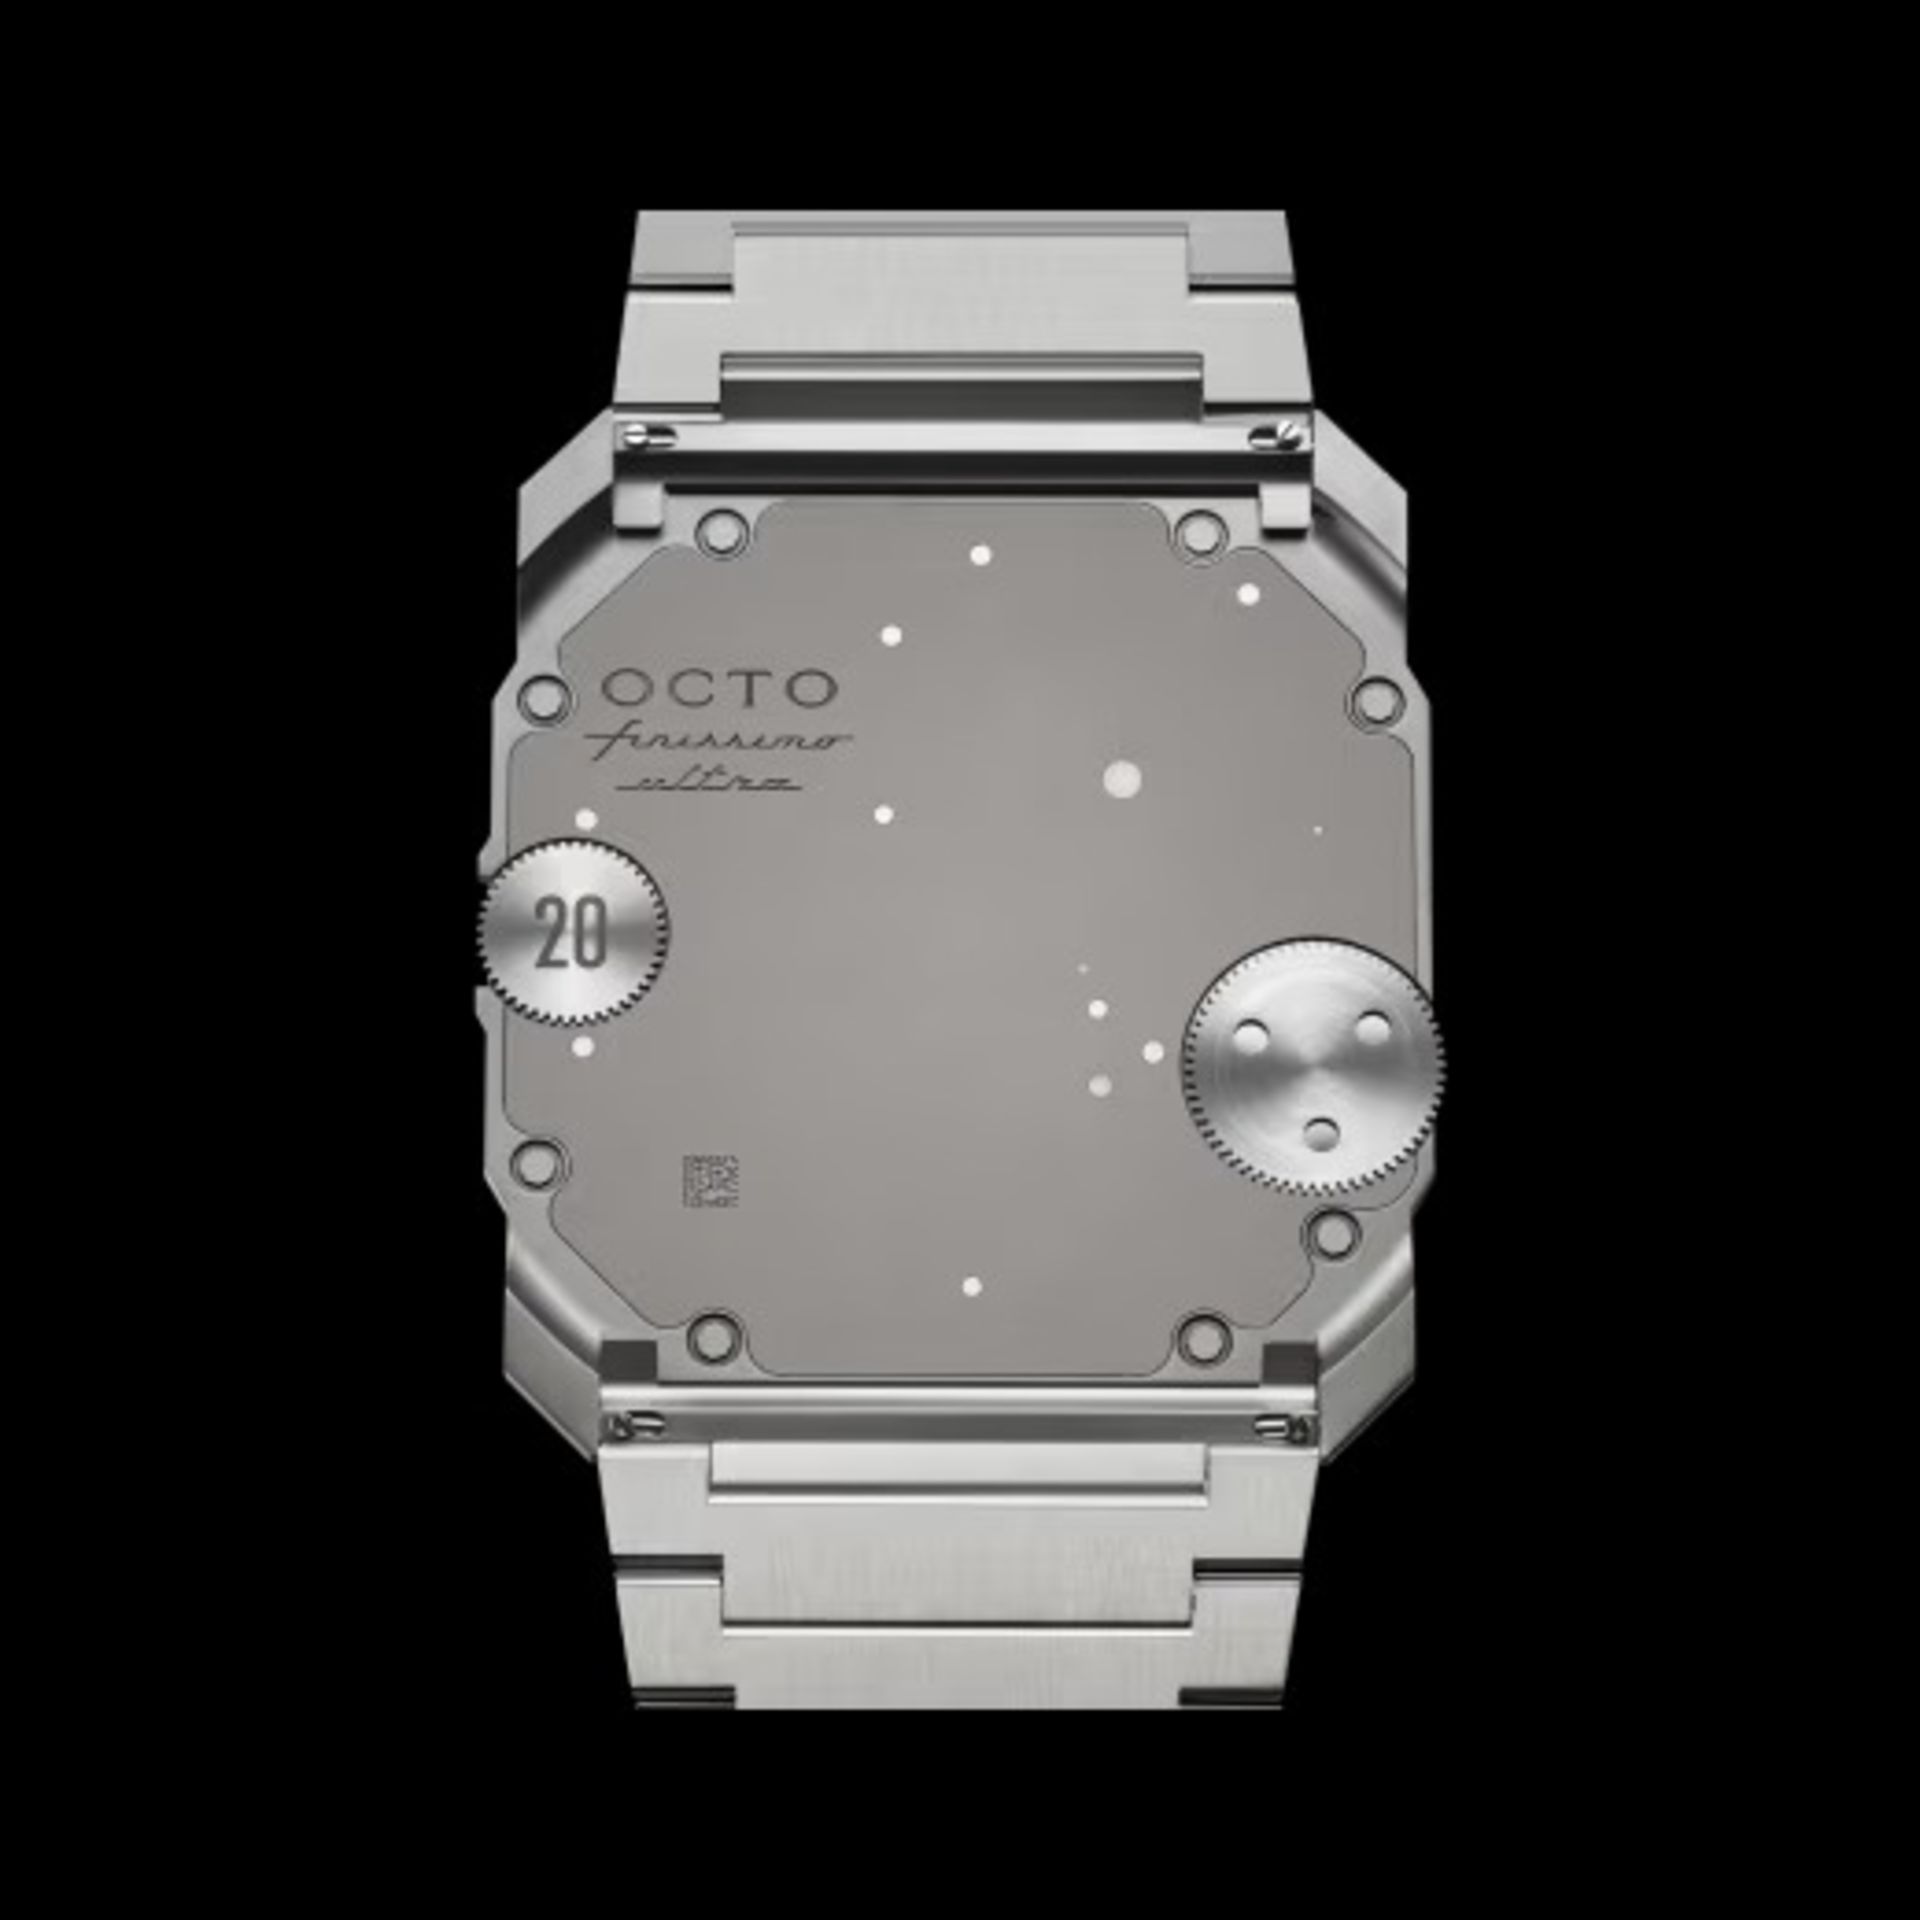 ساعت مکانیکی بولگاری مدل Octo Finissimo Ultra COSC از نمای پشت